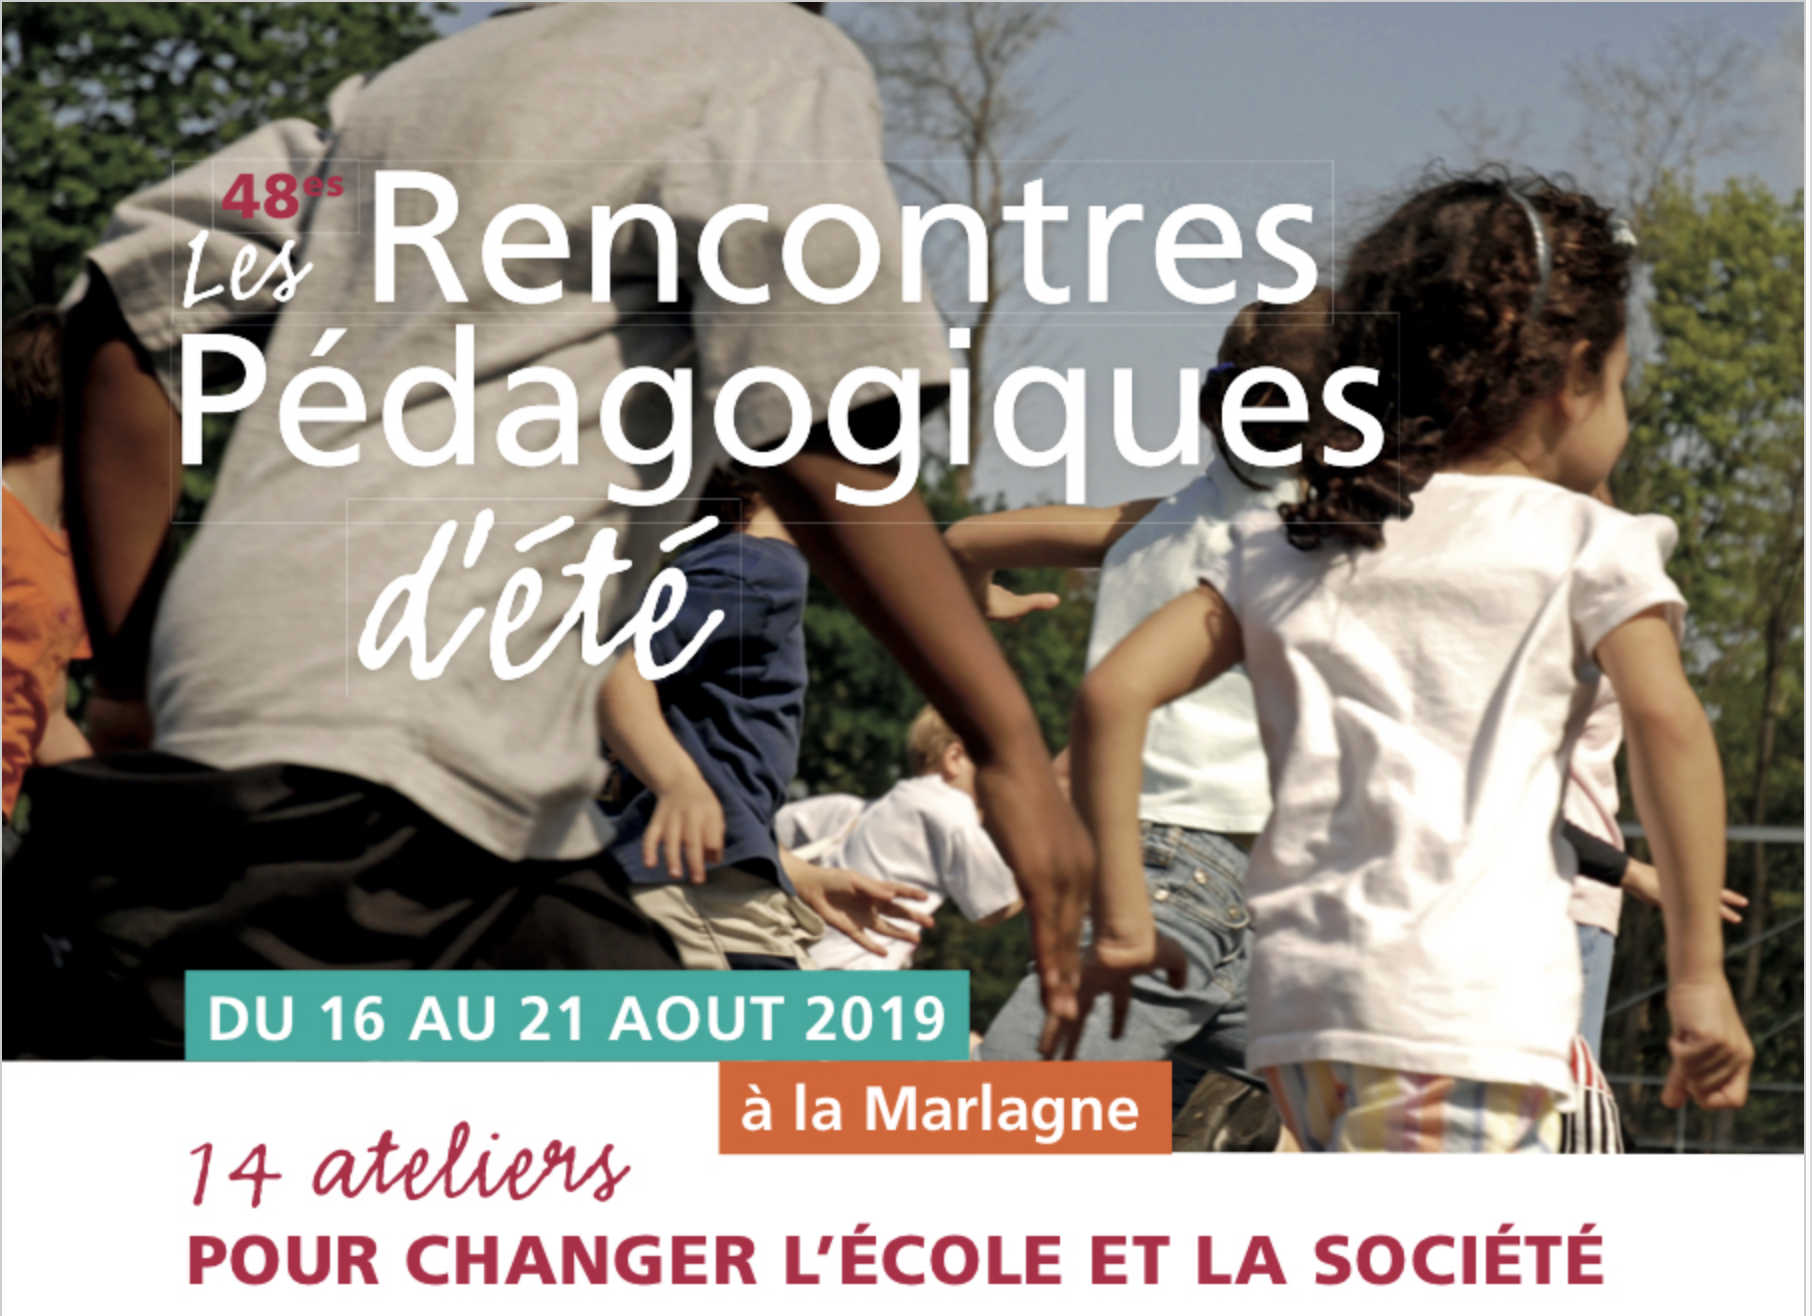 Actualité n°11 : Rencontres Pédagogiques d’Eté 16-21 août 2019